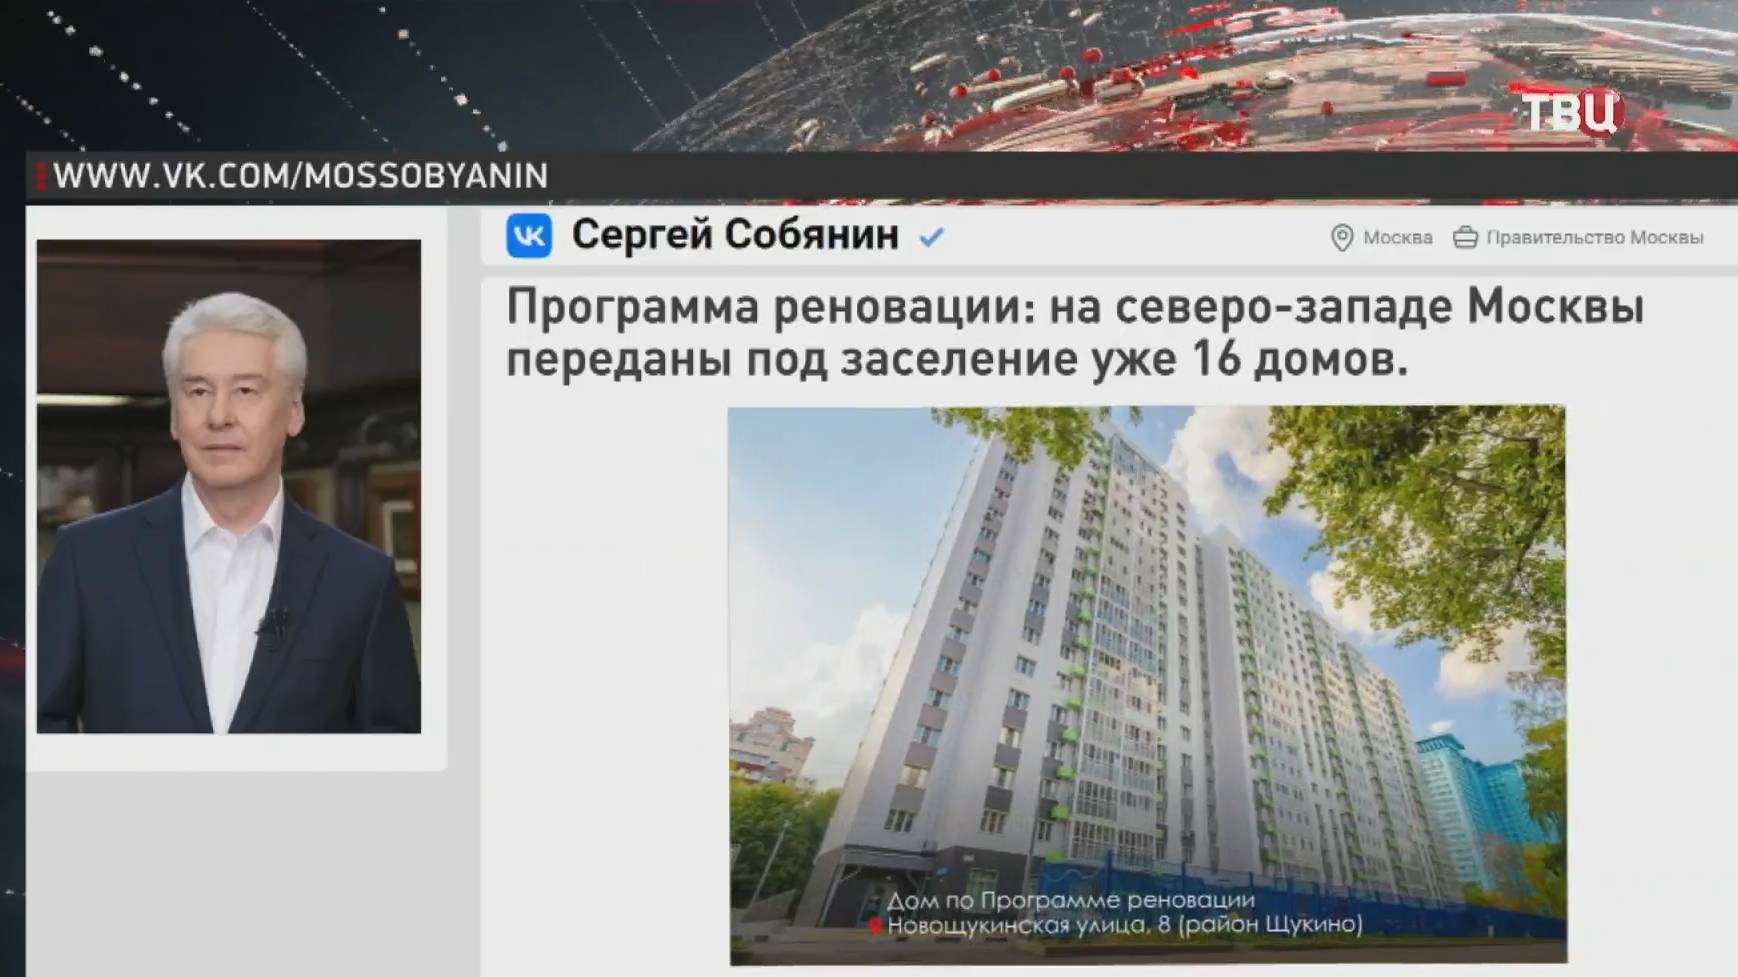 Собянин: Уже 16 домов передали под заселение по программе реновации на северо-западе Москвы